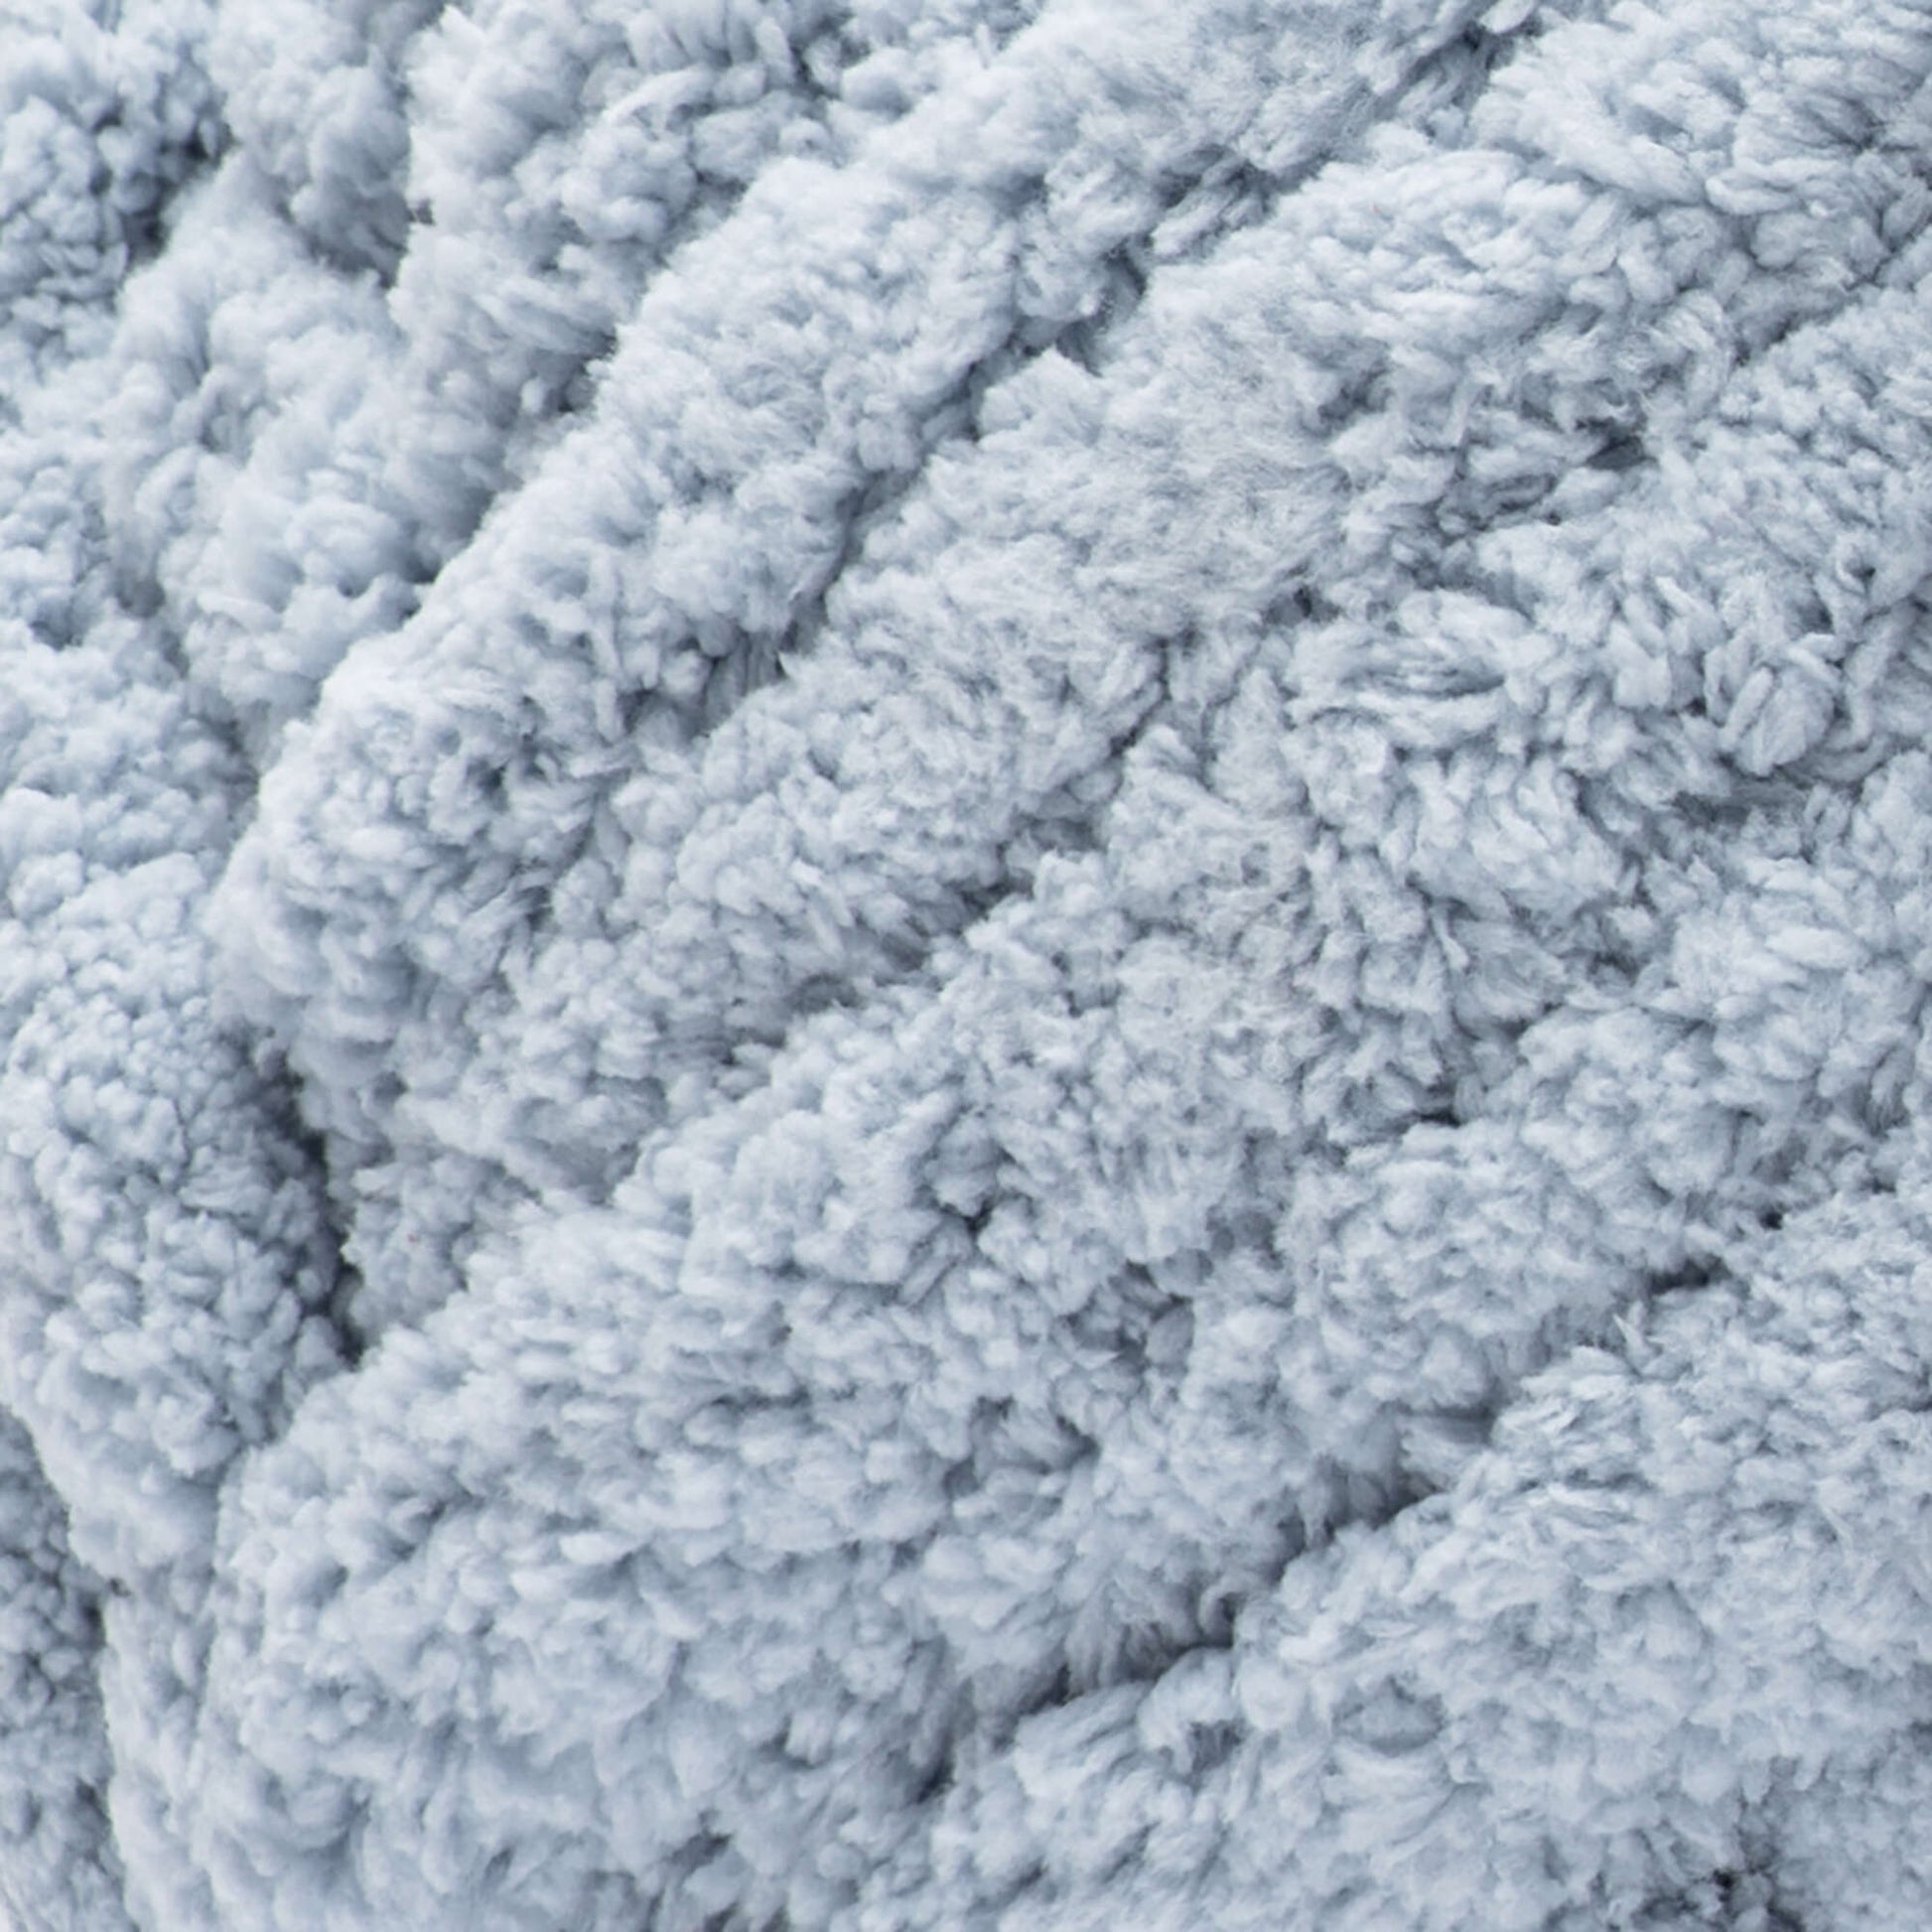 Bernat Blanket Extra Thick Yarn (600g/21.2oz) - Discontinued Shades Fog Blue